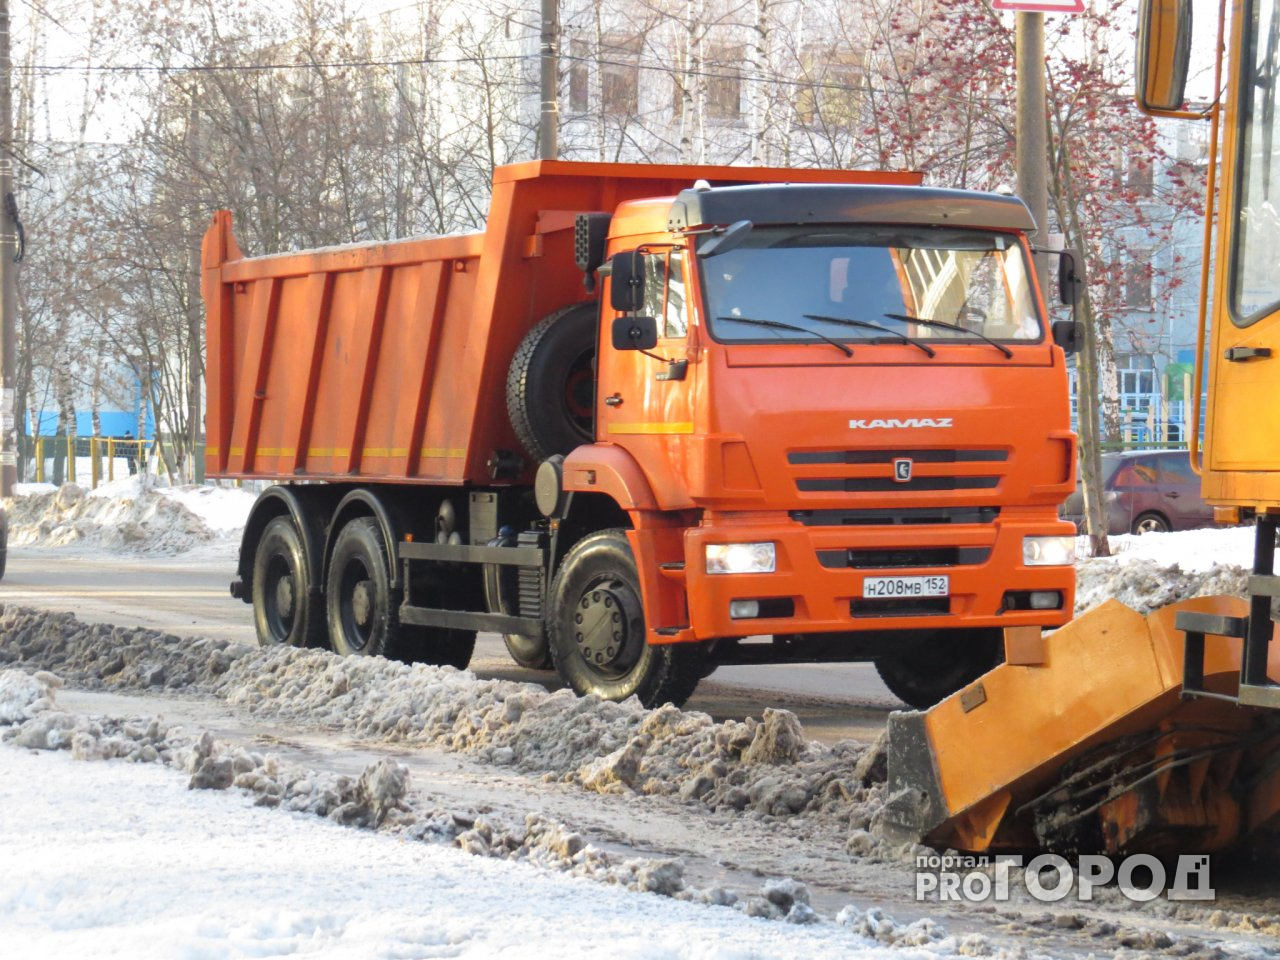 В Ярославле две припаркованные машины попрепятствовали вывозу снега